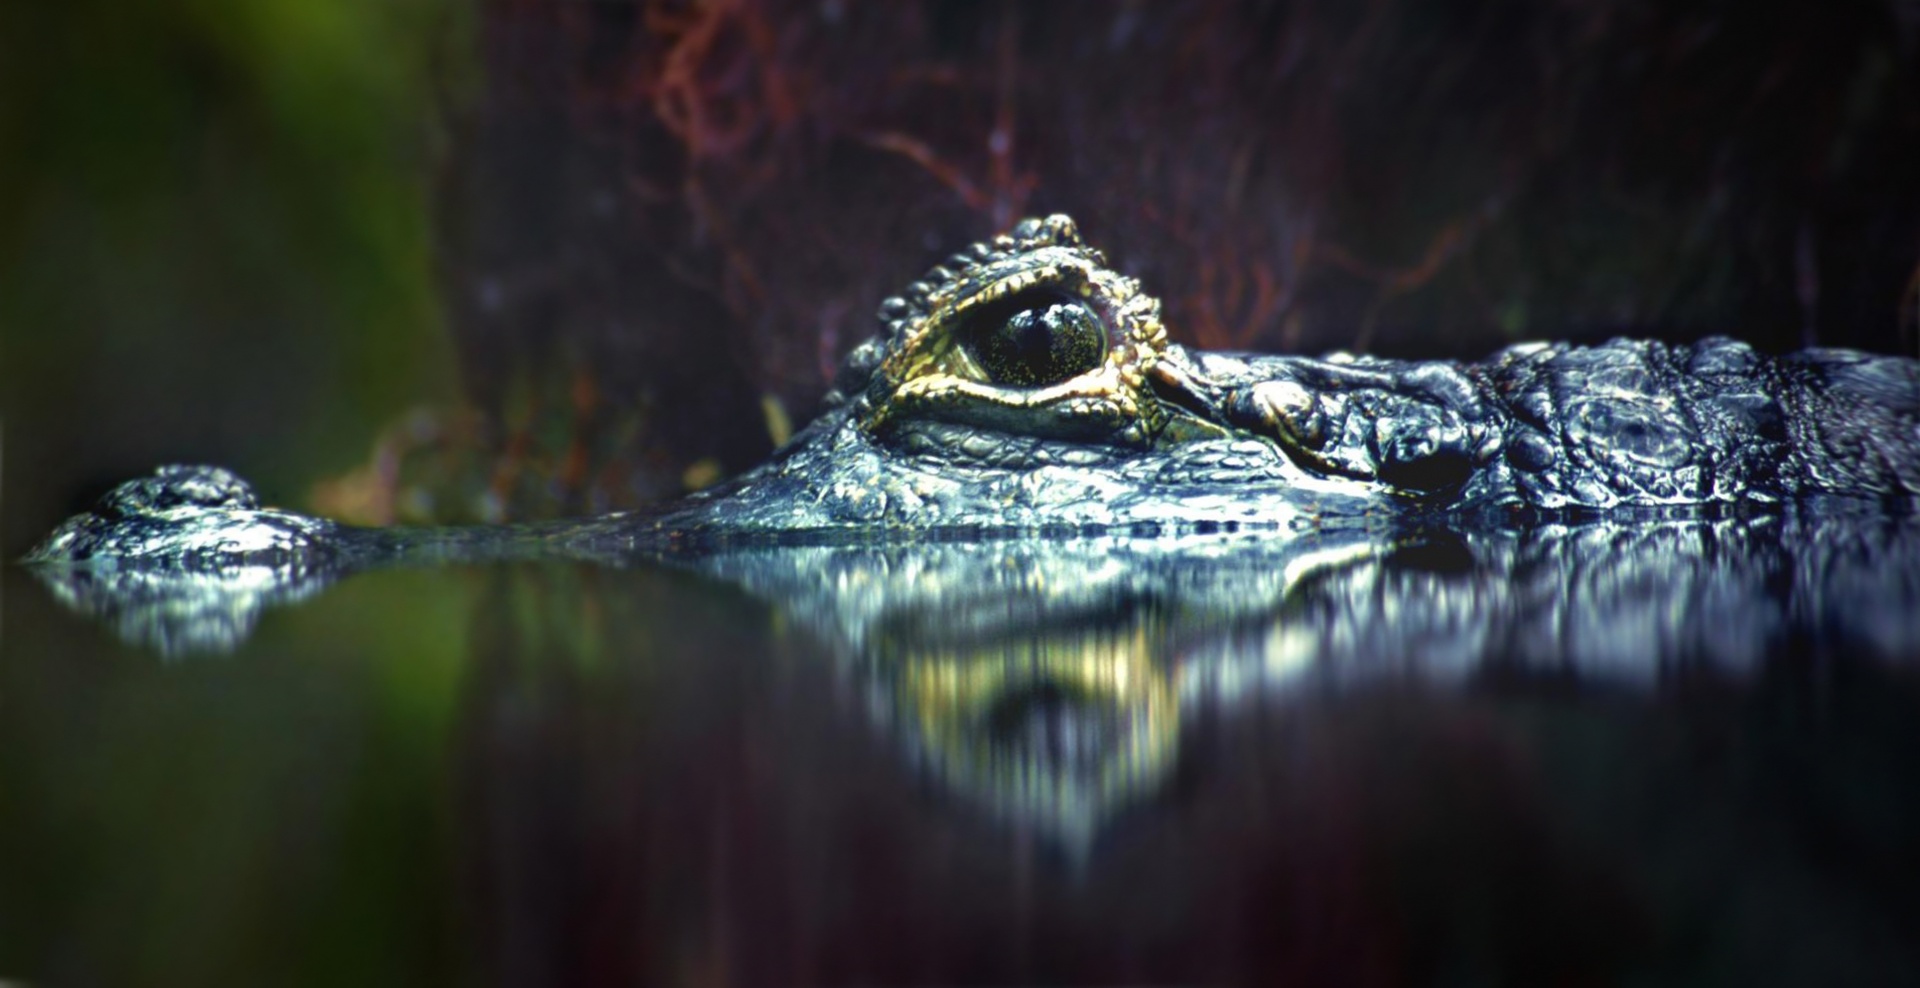 Alligator Crocodile Photo Water